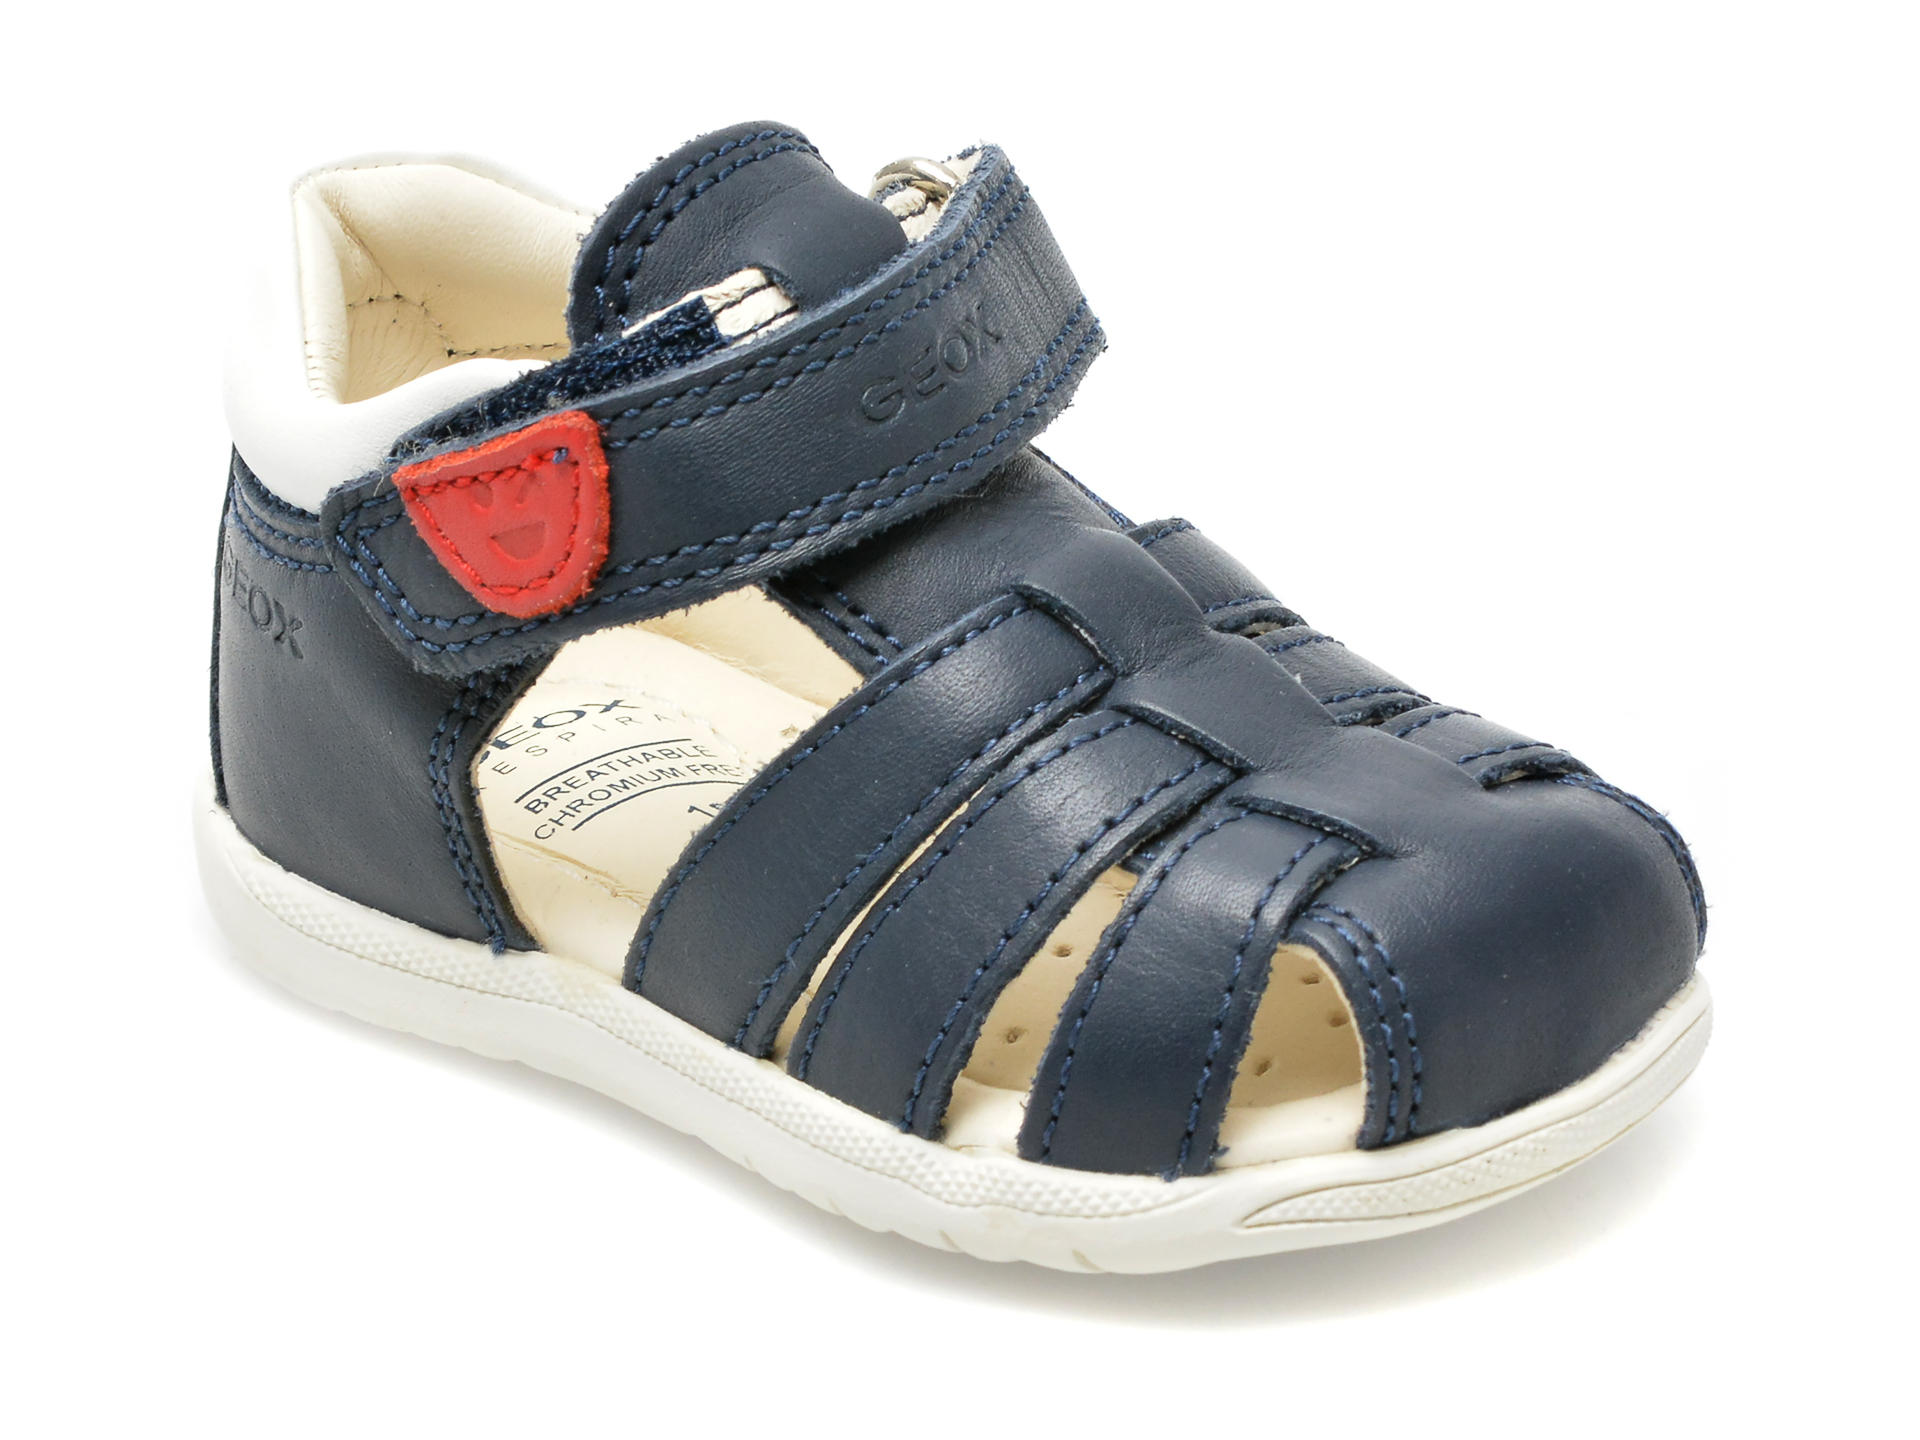 Pantofi GEOX bleumarin, B254VA, din piele naturala /copii/incaltaminte imagine super redus 2022